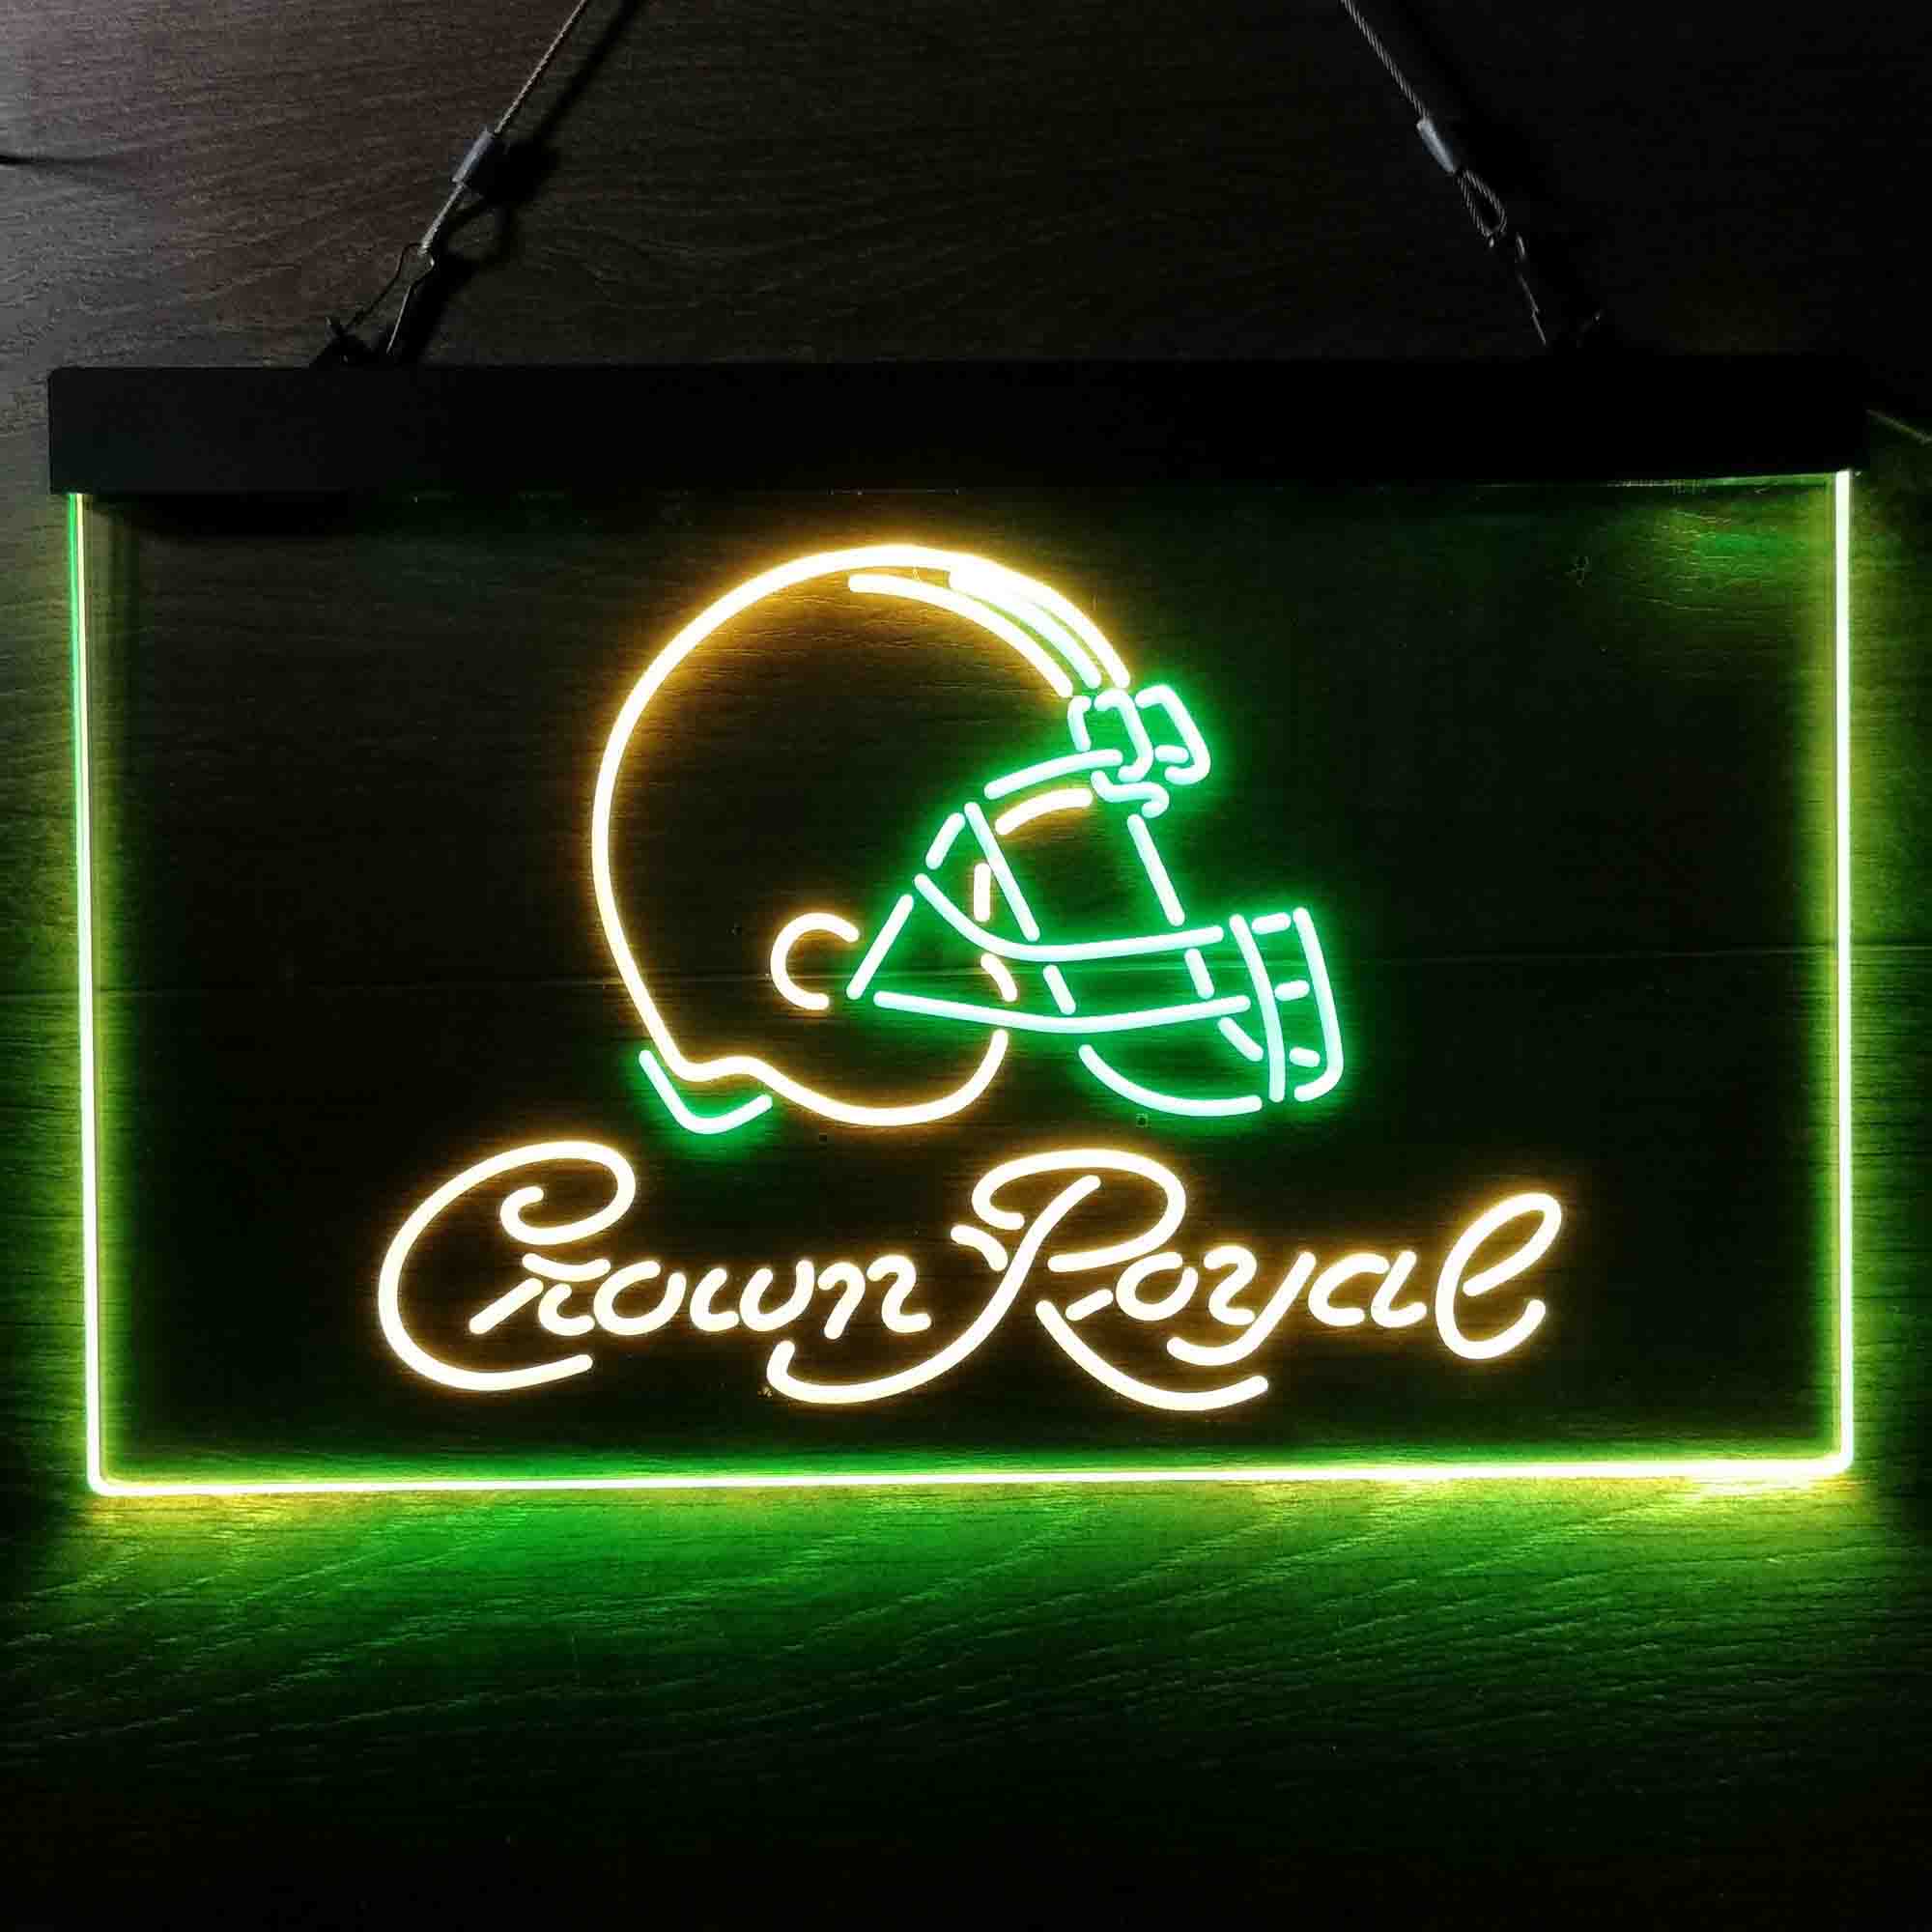 Crown Royal Bar Cleveland Browns Est. 1946 Neon-Like LED Sign